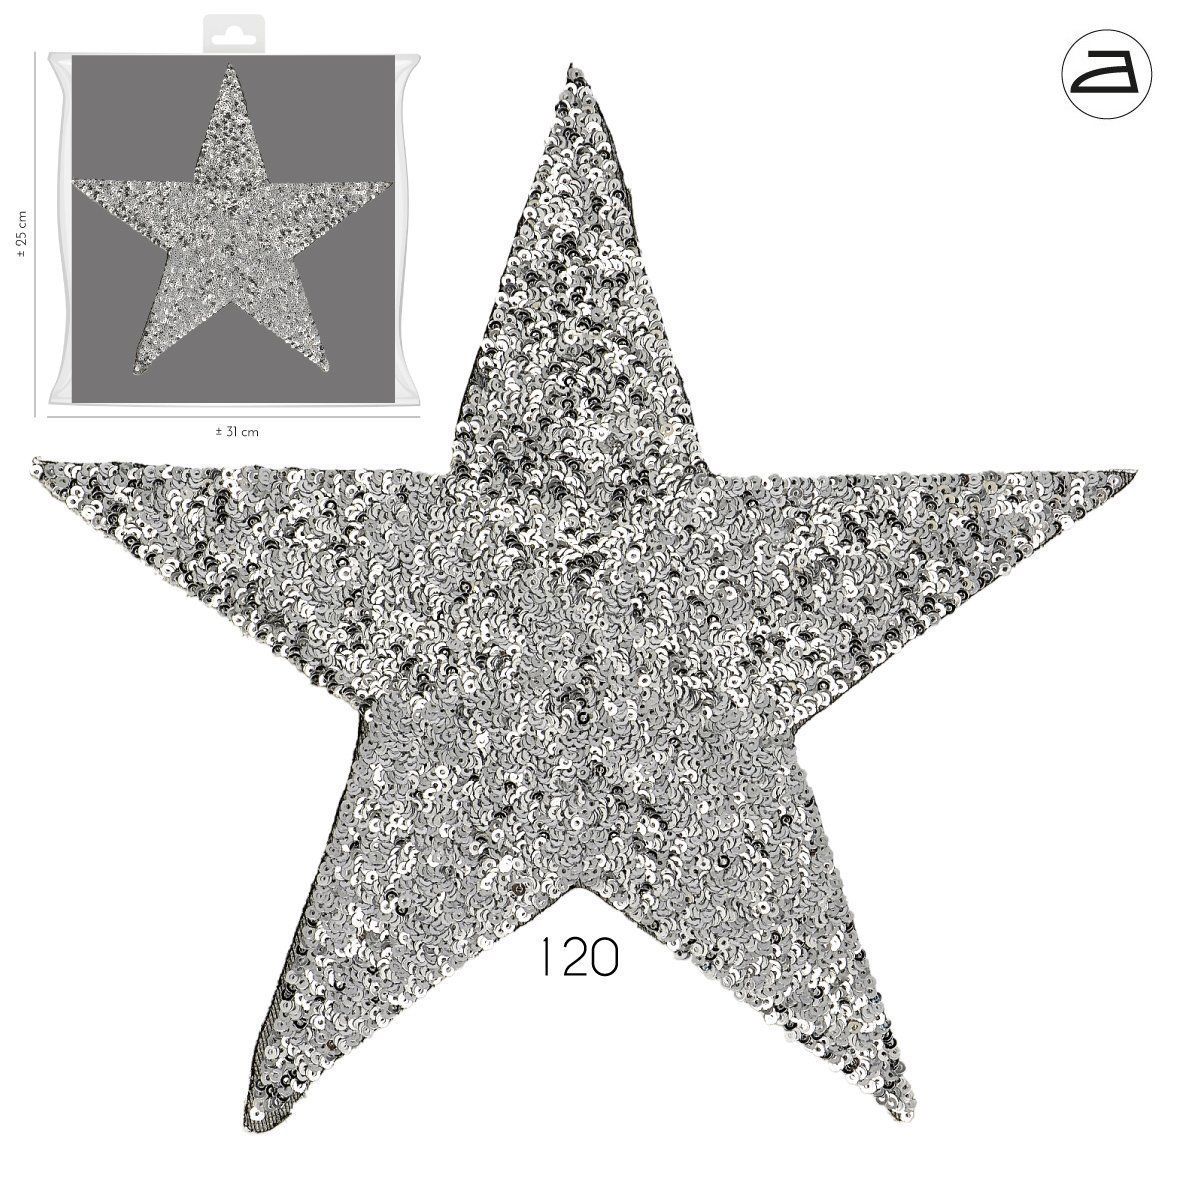 Patch thermocollant en forme d'étoile pour textile - Stikets